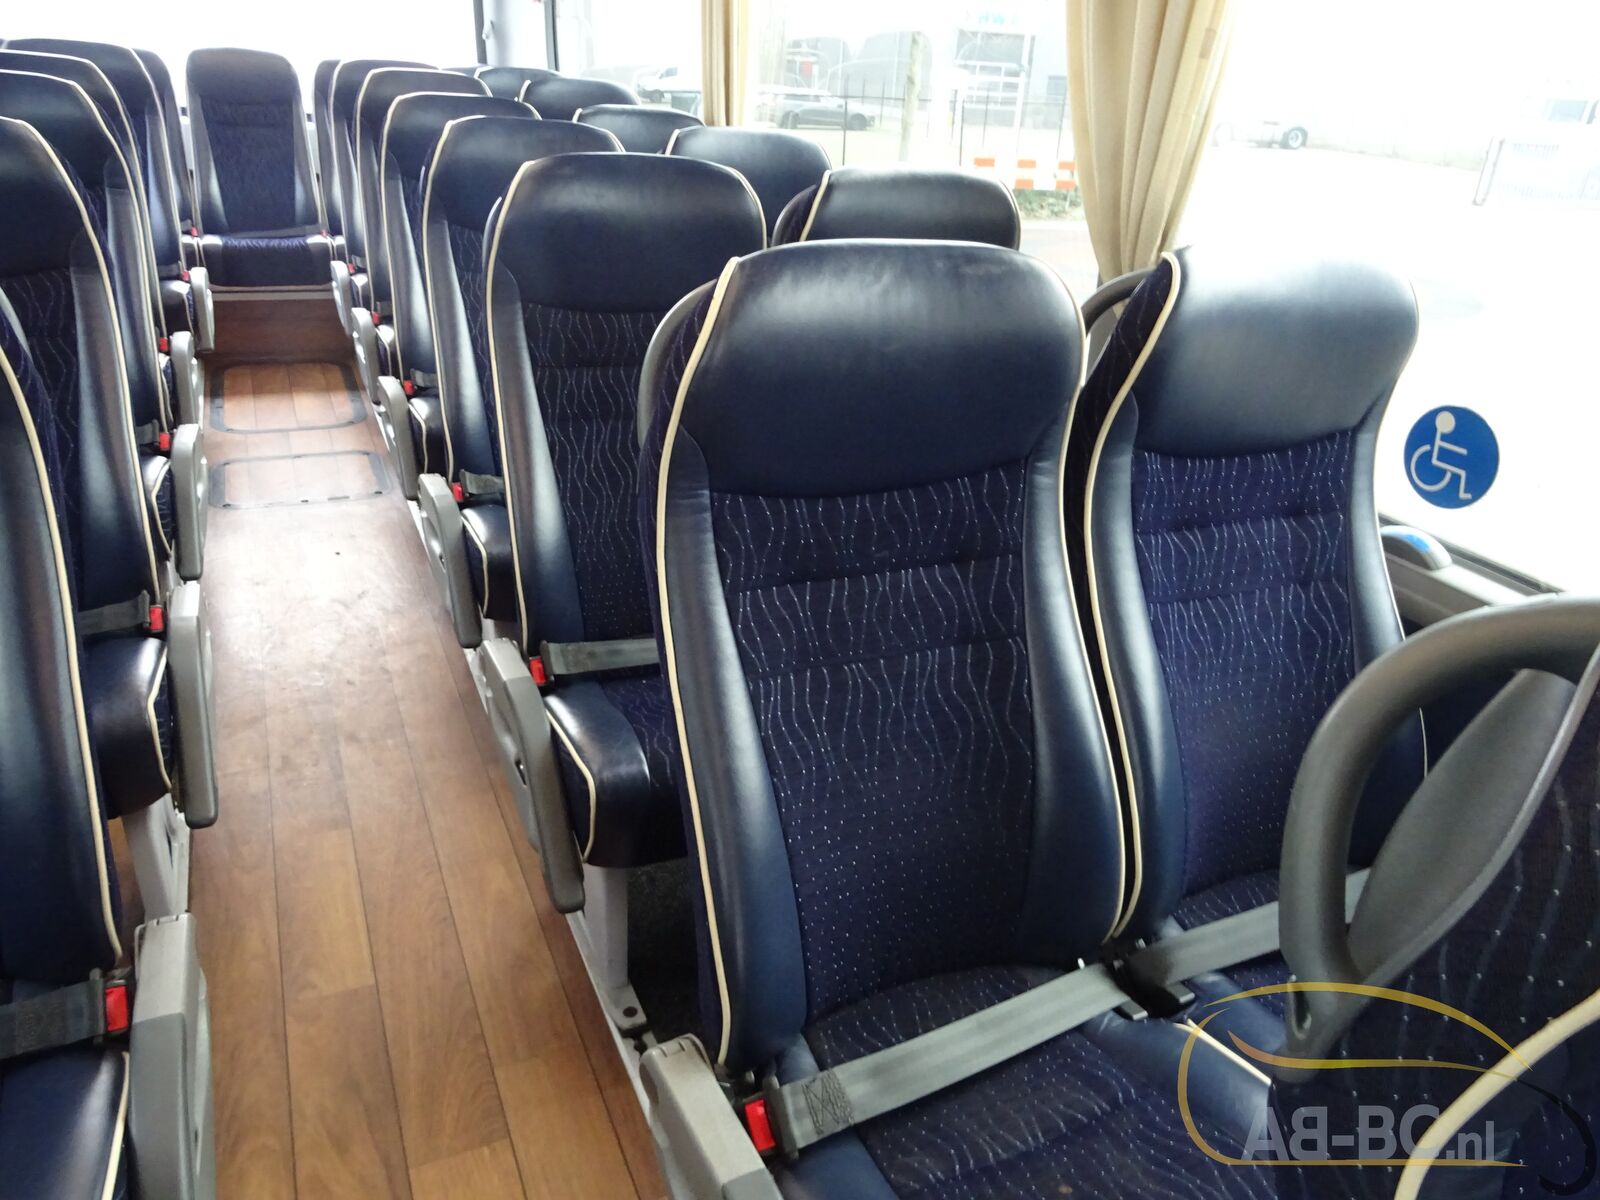 coach-bus-MAN-R08-Lions-Coach-59-Seats-EURO-6-6-wheelchair-places---1675763522330245877_orig_8fd8f14fe1a5da09456abcf822ce0a35--23020711482134347500